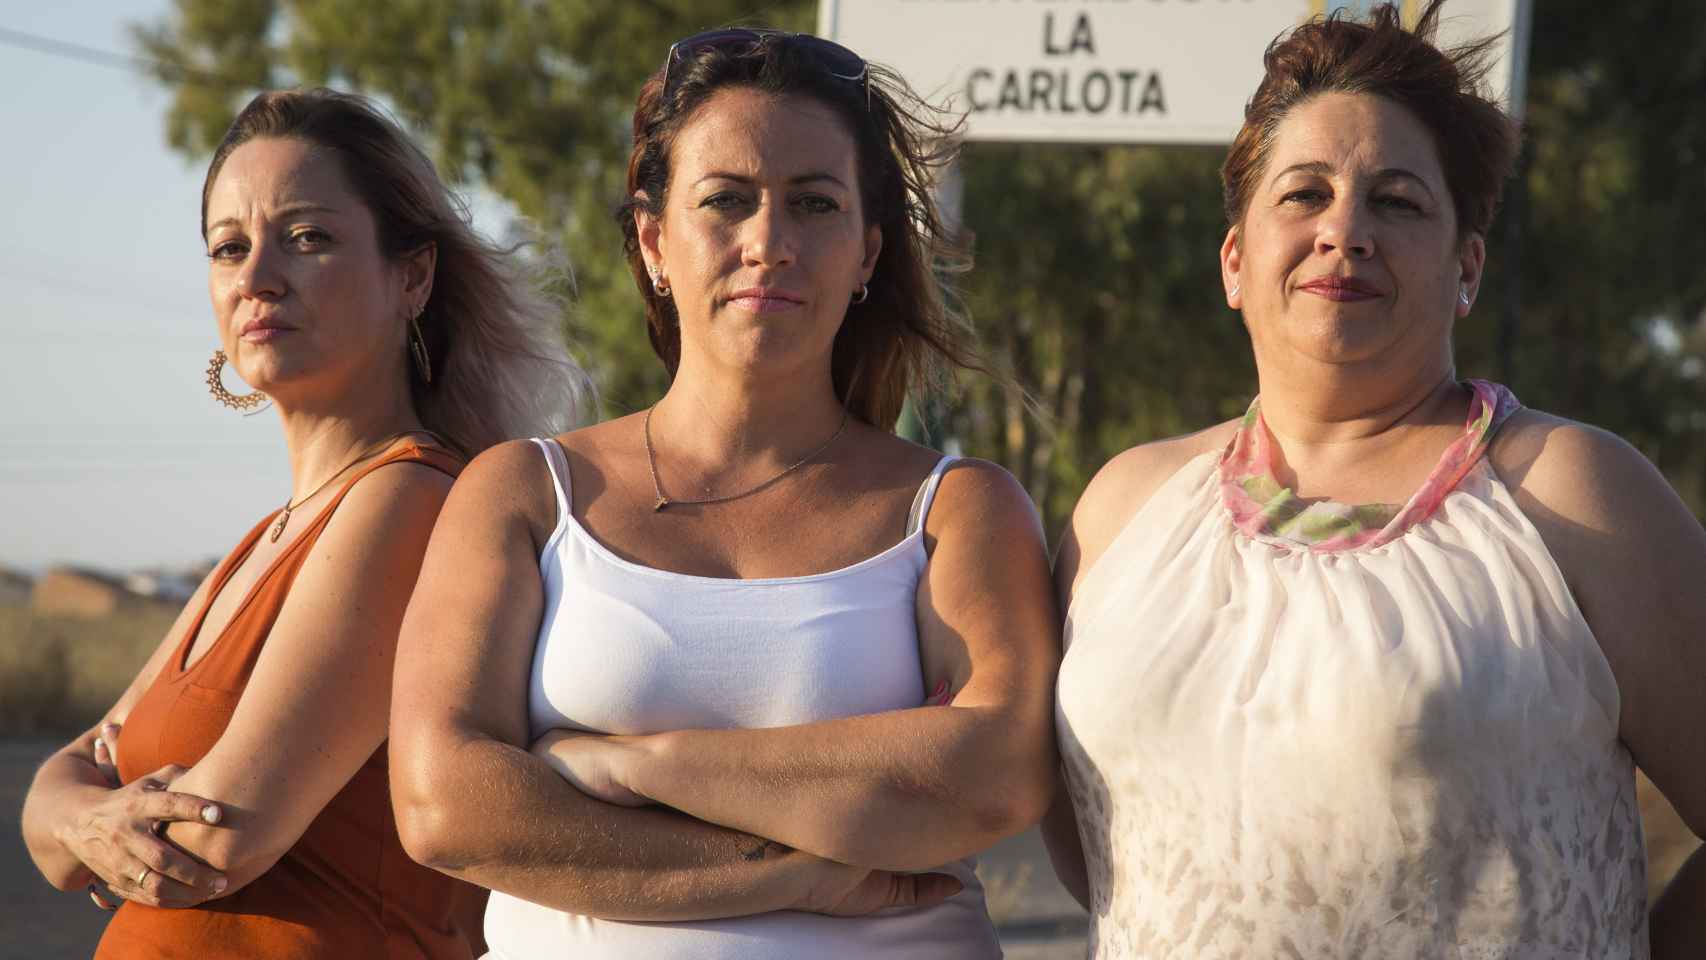 De izquierda a derecha, Gema, Susana y Mariluz, tres de las perjudicadas por Essure de La Carlota (Córdoba), un municipio con 13.000 habitantes y 17 afectadas censadas.